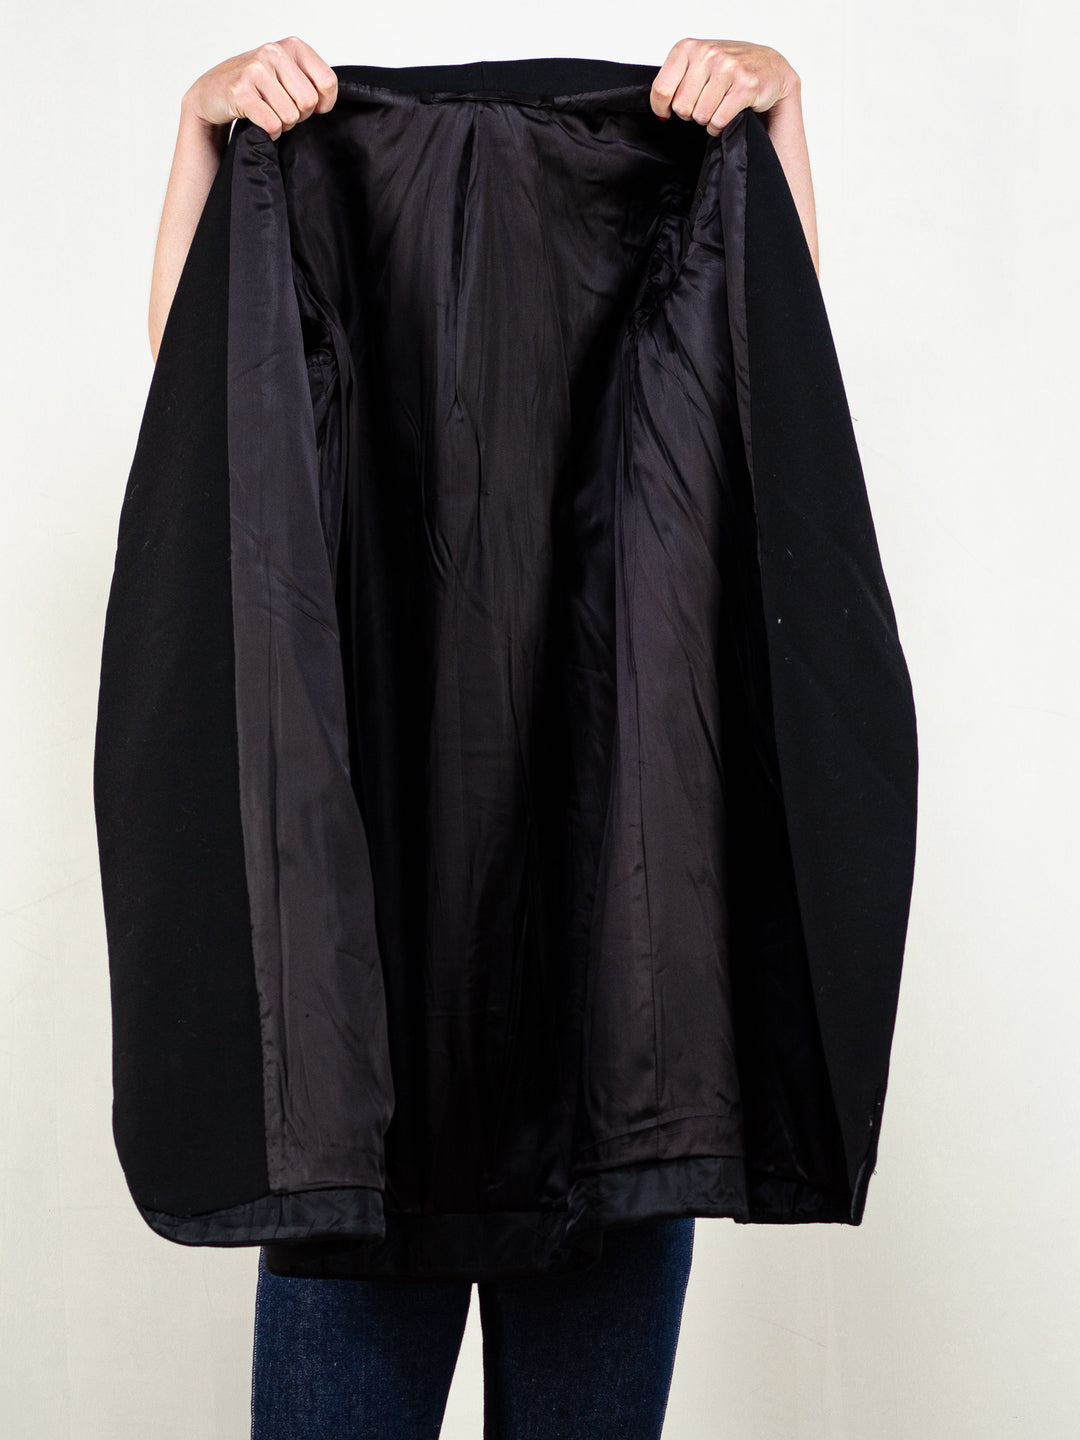 60s Black Coat women 60's black wool blend coat wrap design wool coat women opera coat minimalist casual coat size medium